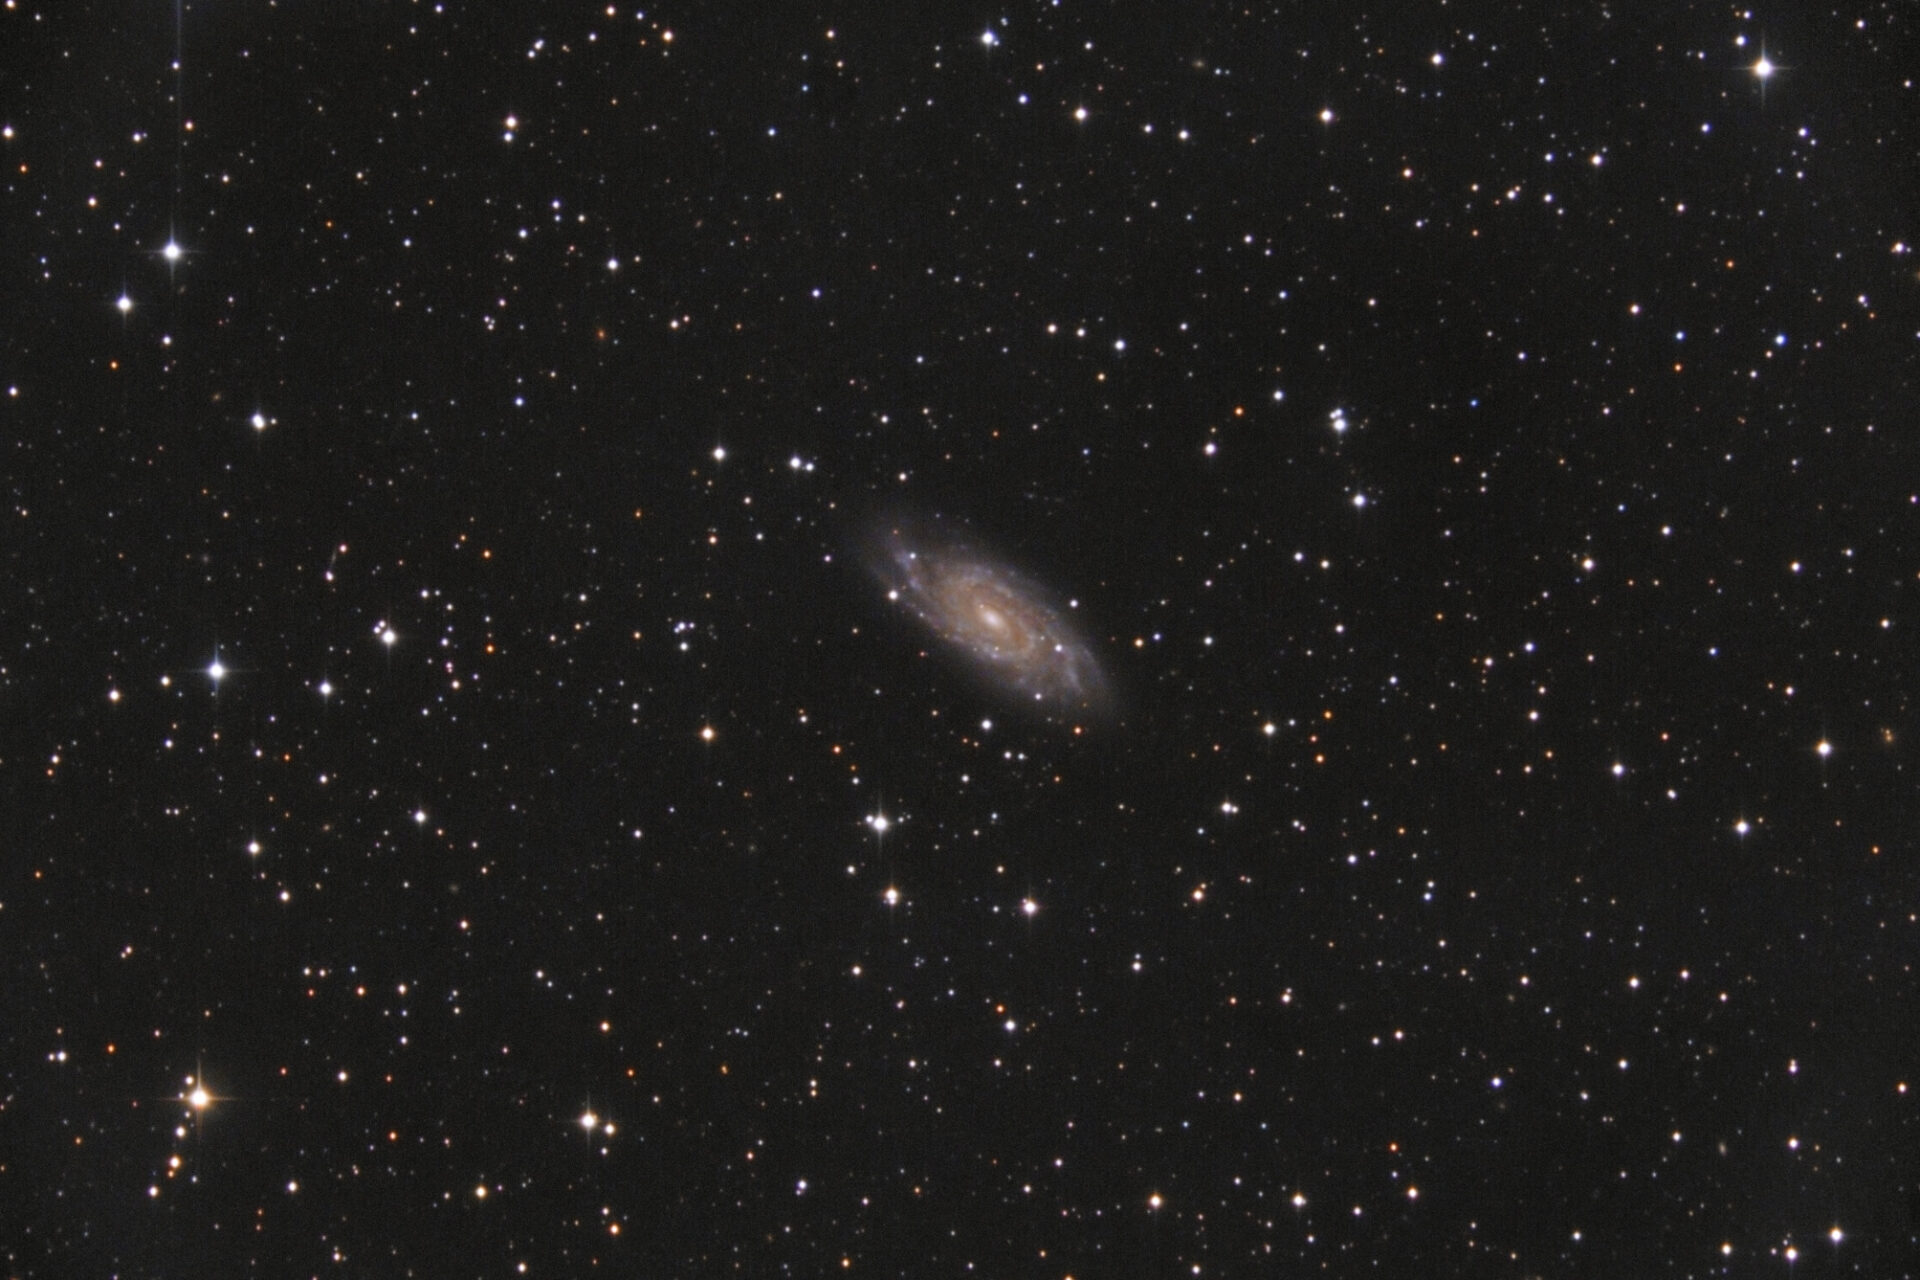 NGC 6118